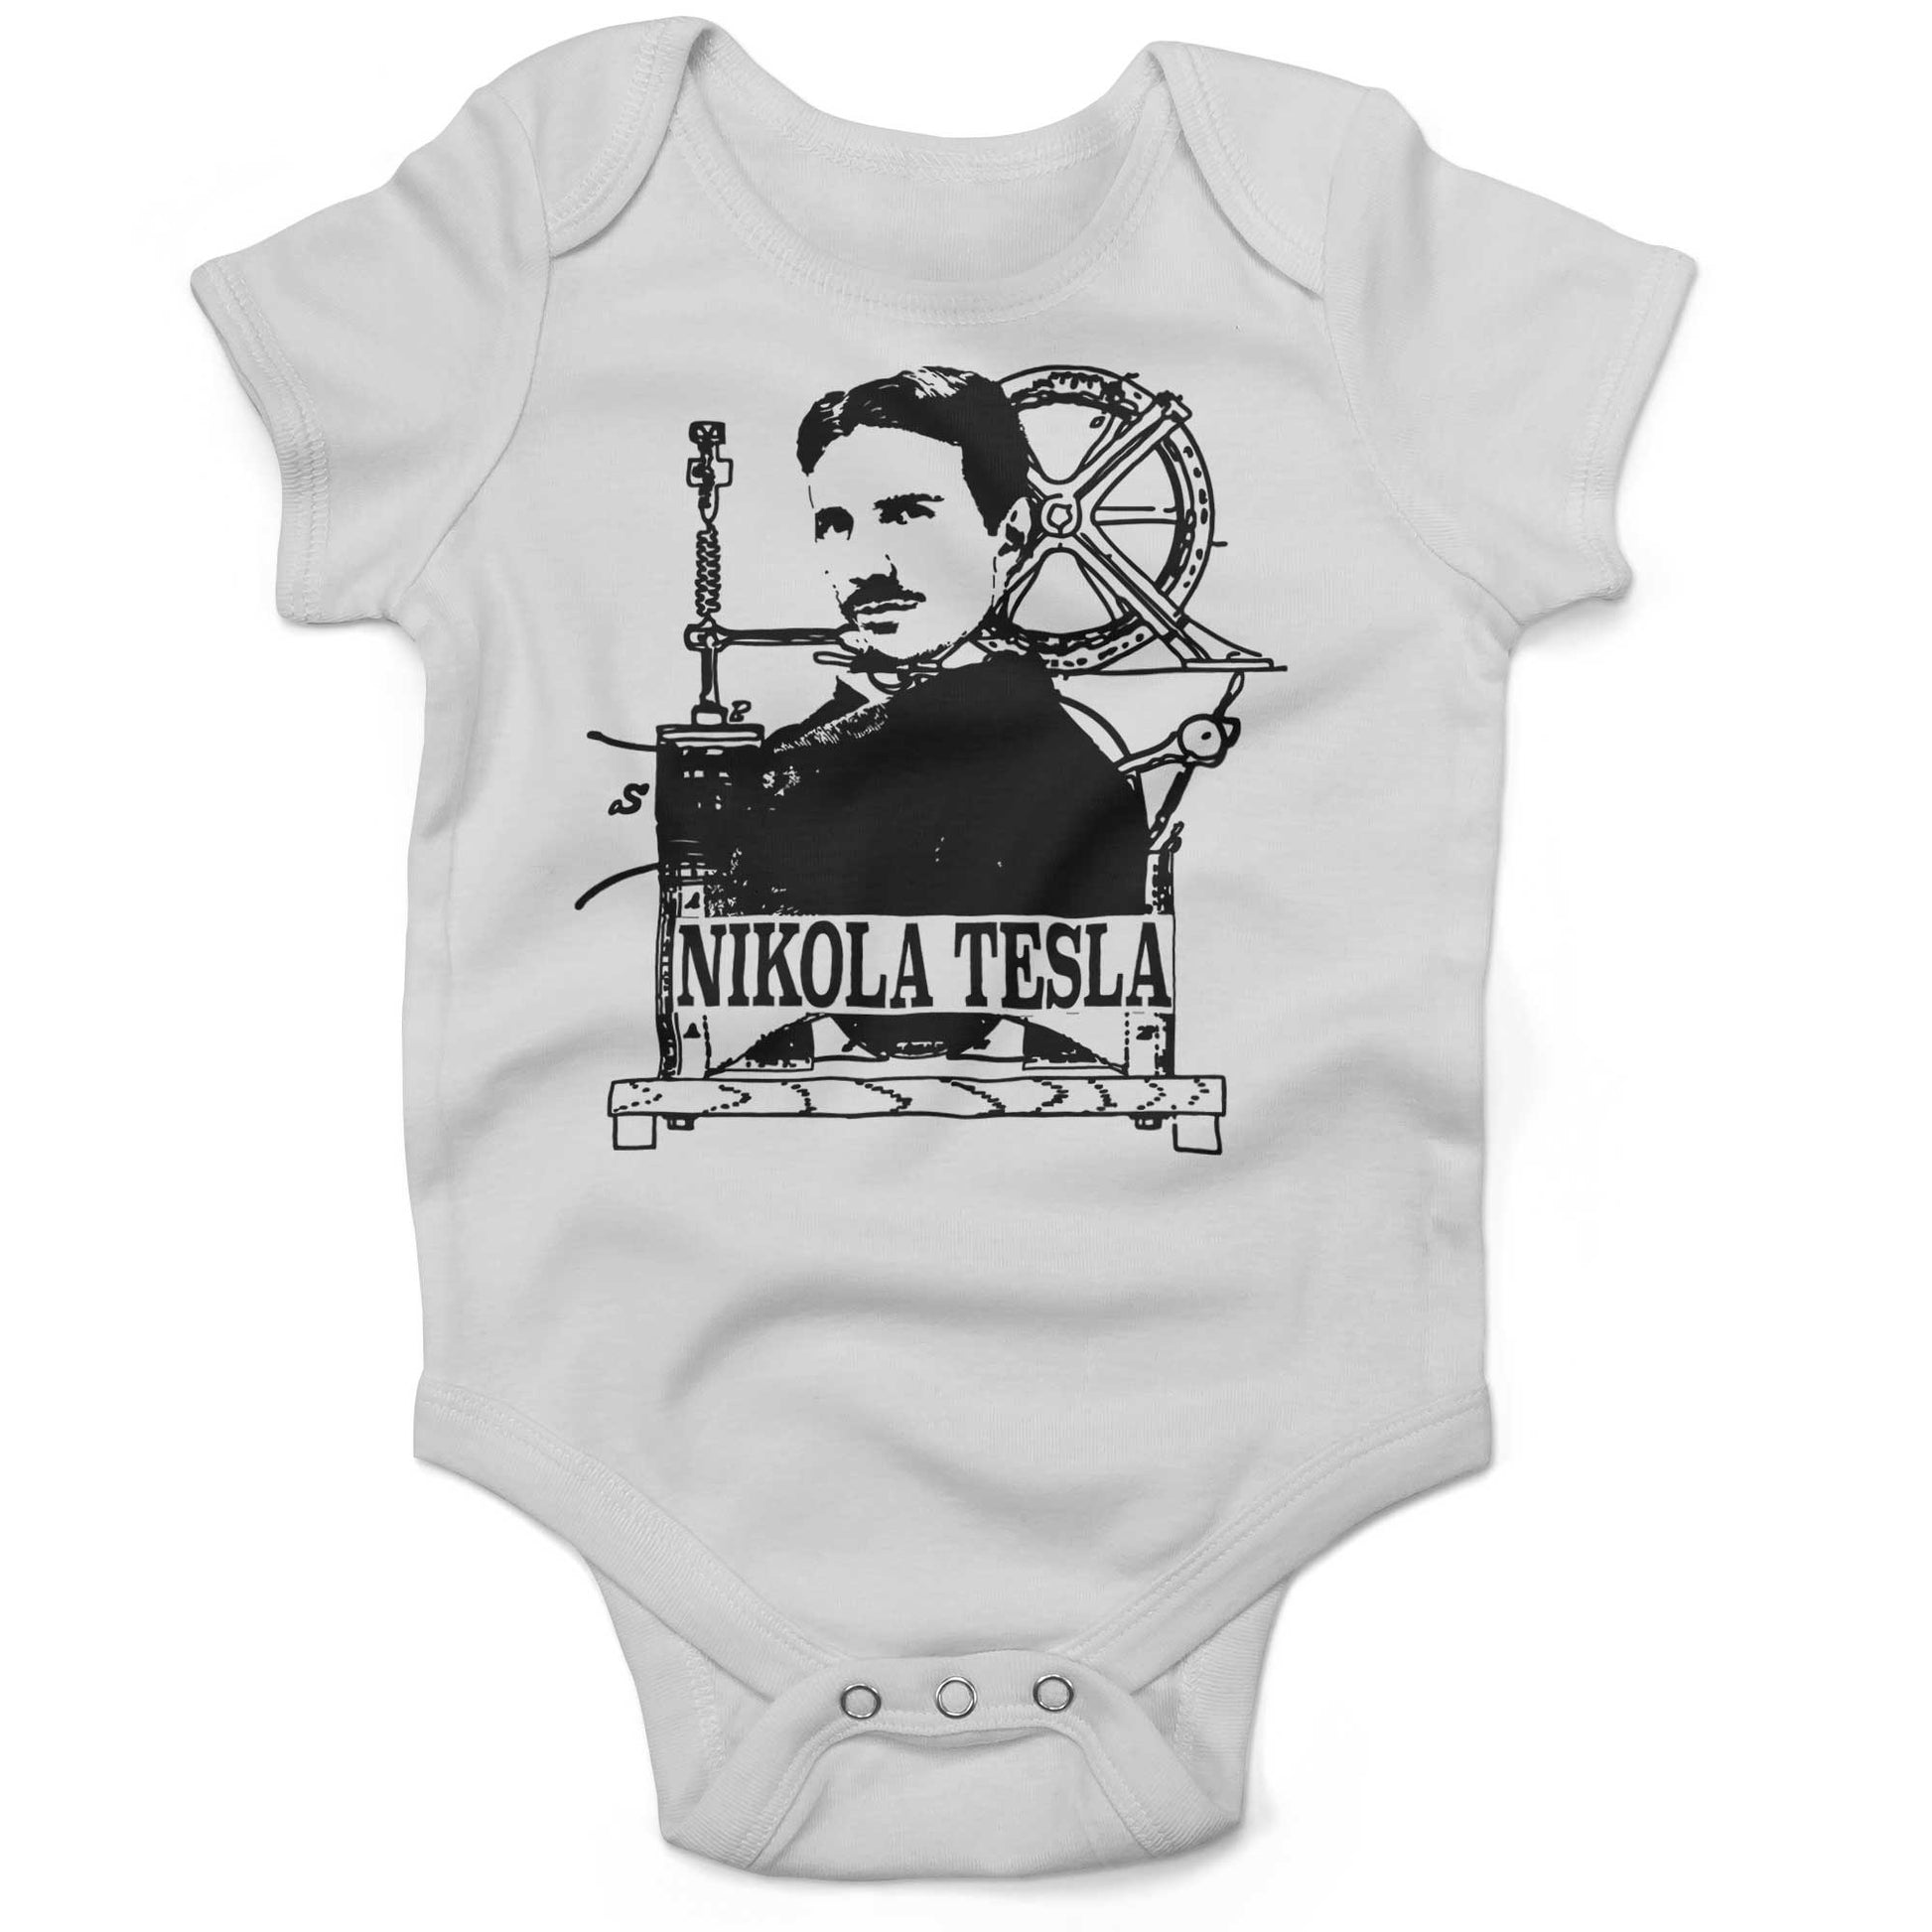 Nikola Tesla Infant Bodysuit-White-3-6 months